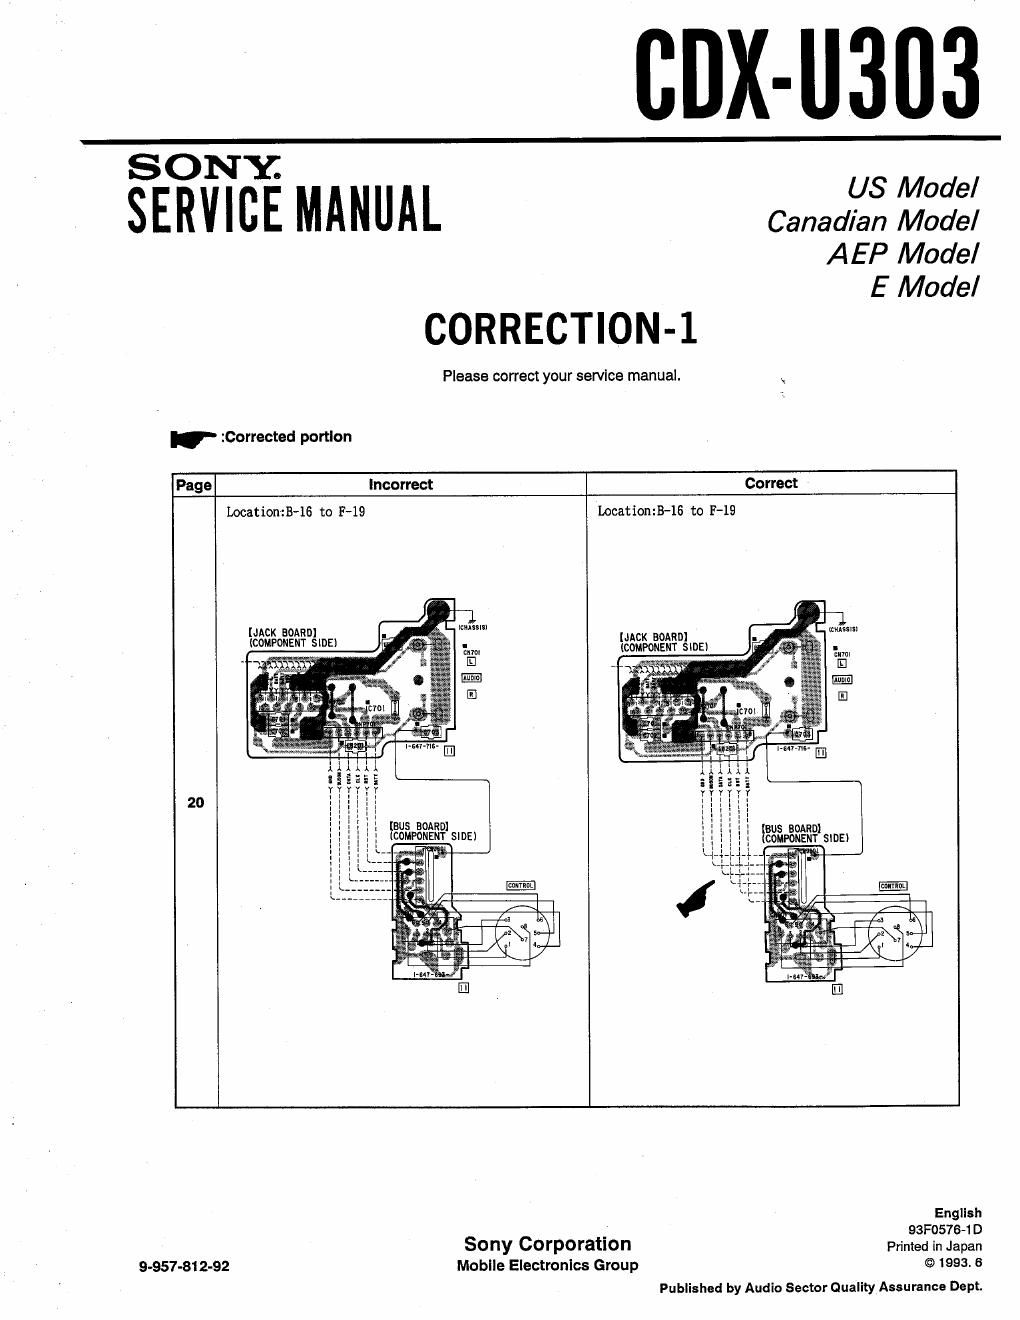 sony cdx u 303 service manual